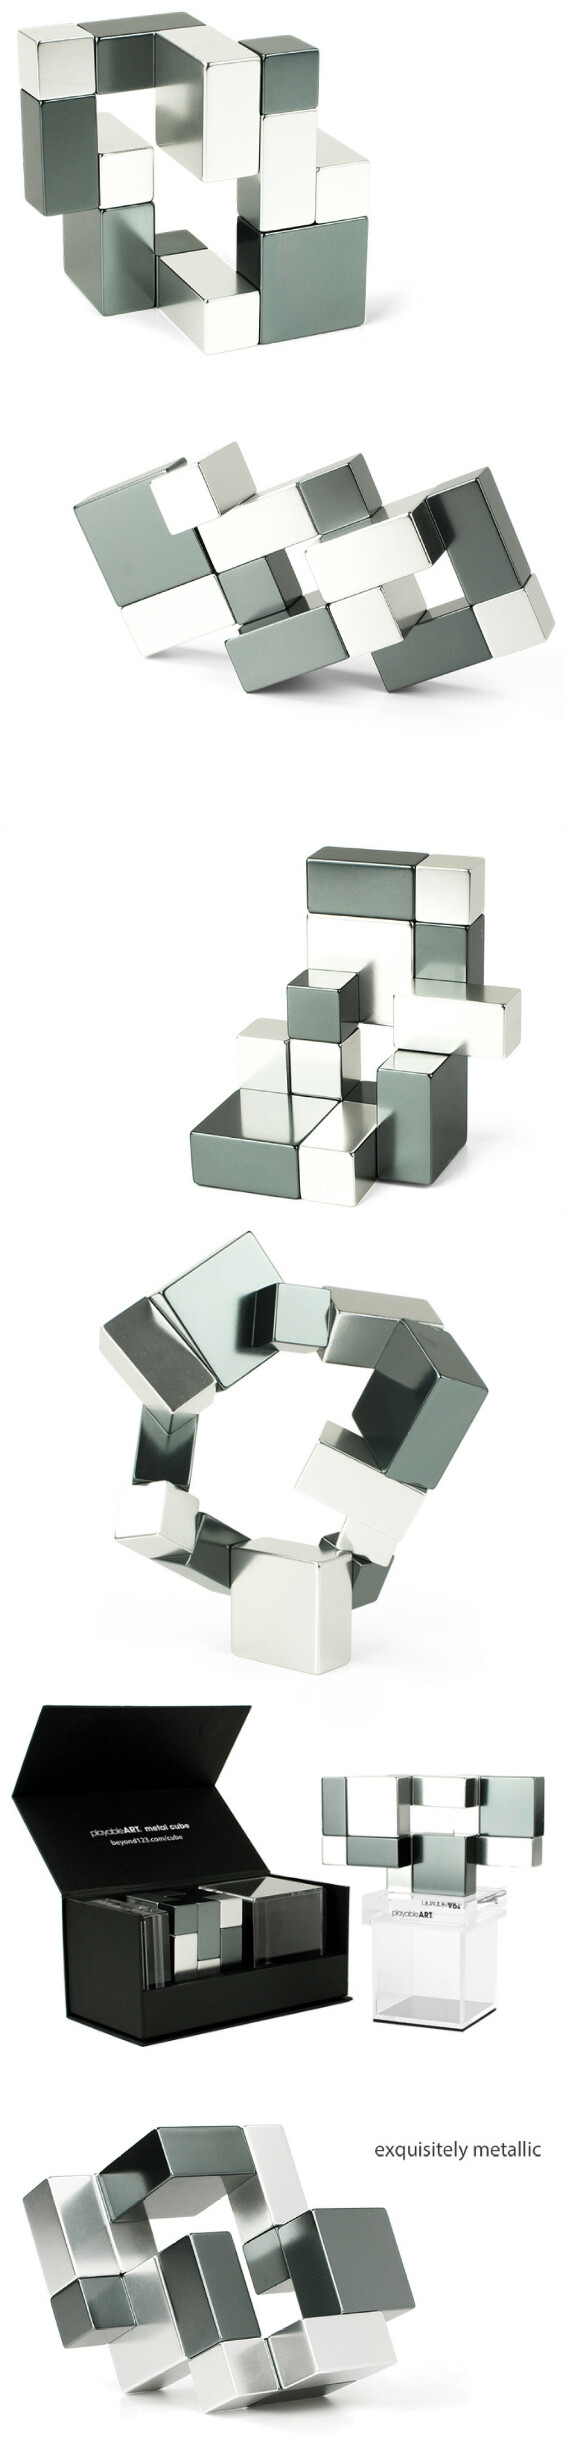 德国设计师bernd liebert设计了一款立方体…